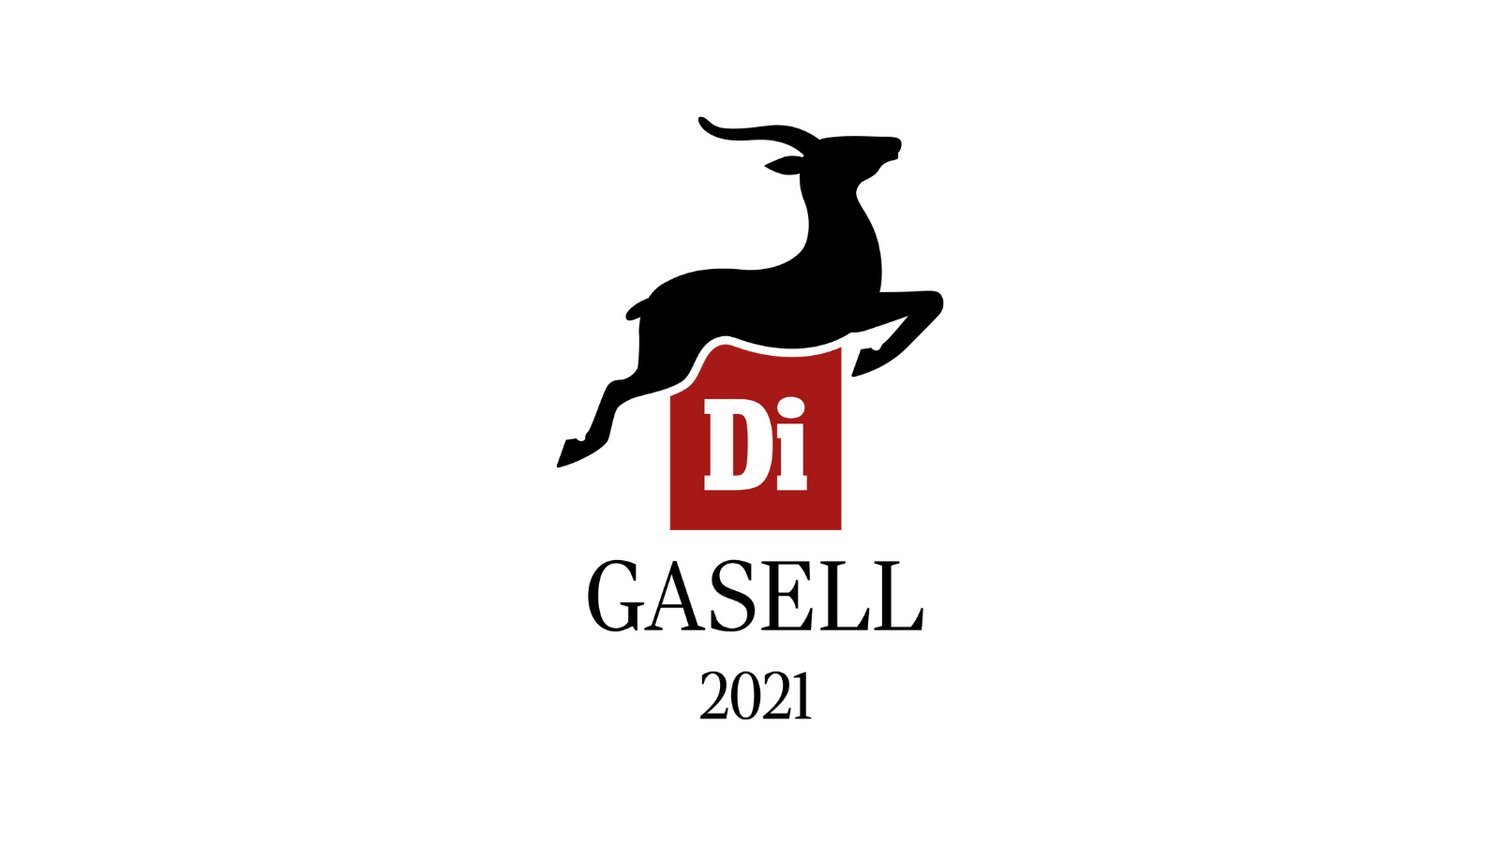 Di GASELL 2021